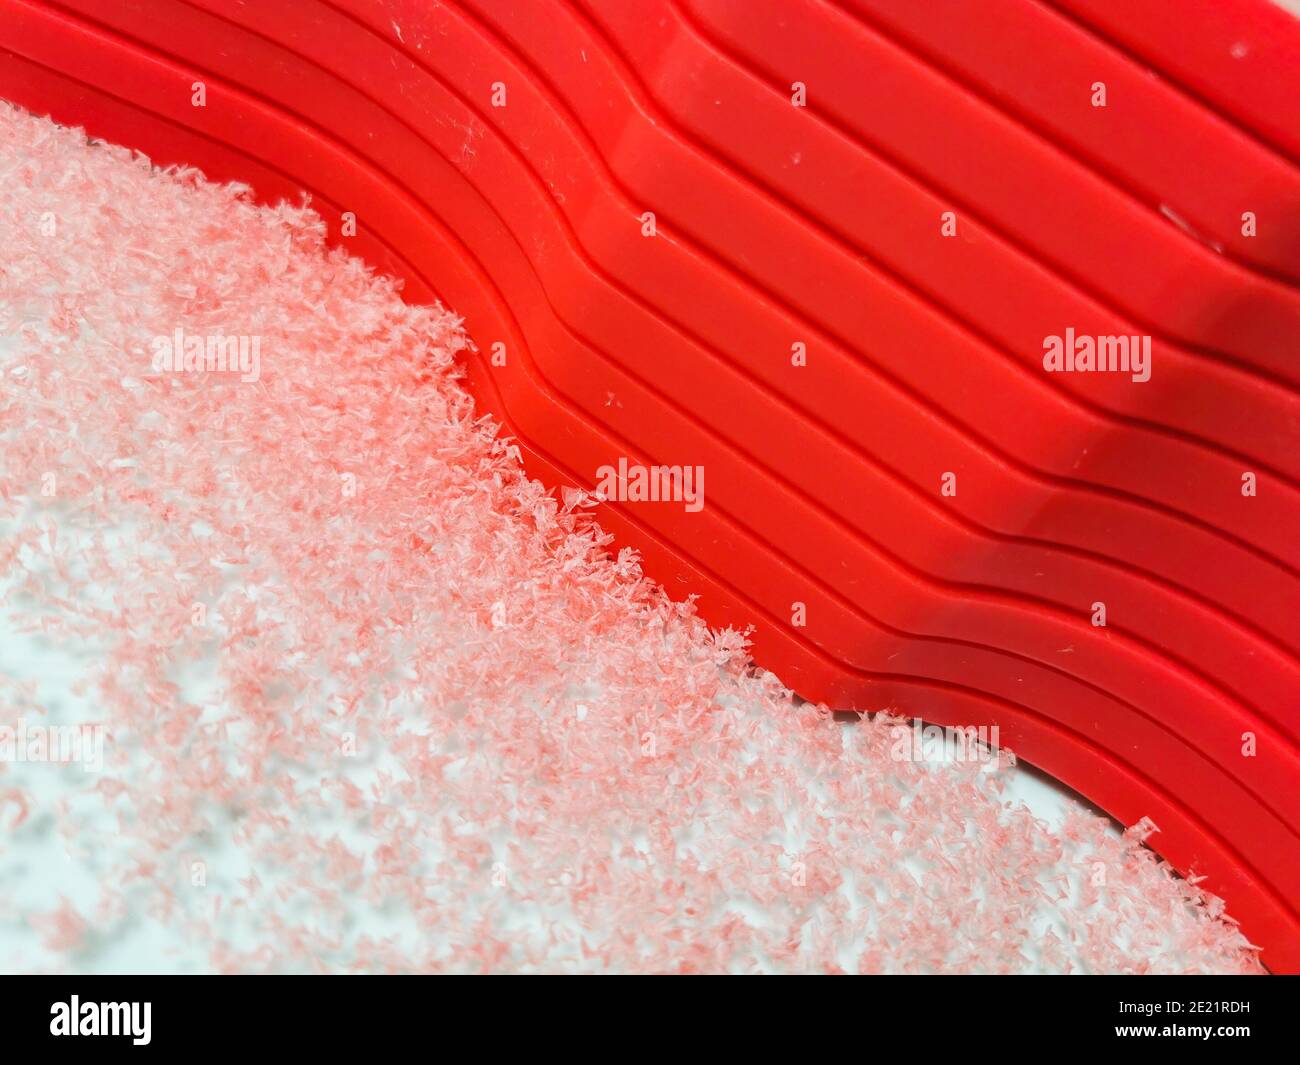 Plastica PET-G fabbricata in rosso con detriti intorno al percorso i bordi e con lo spazio di copia Foto Stock